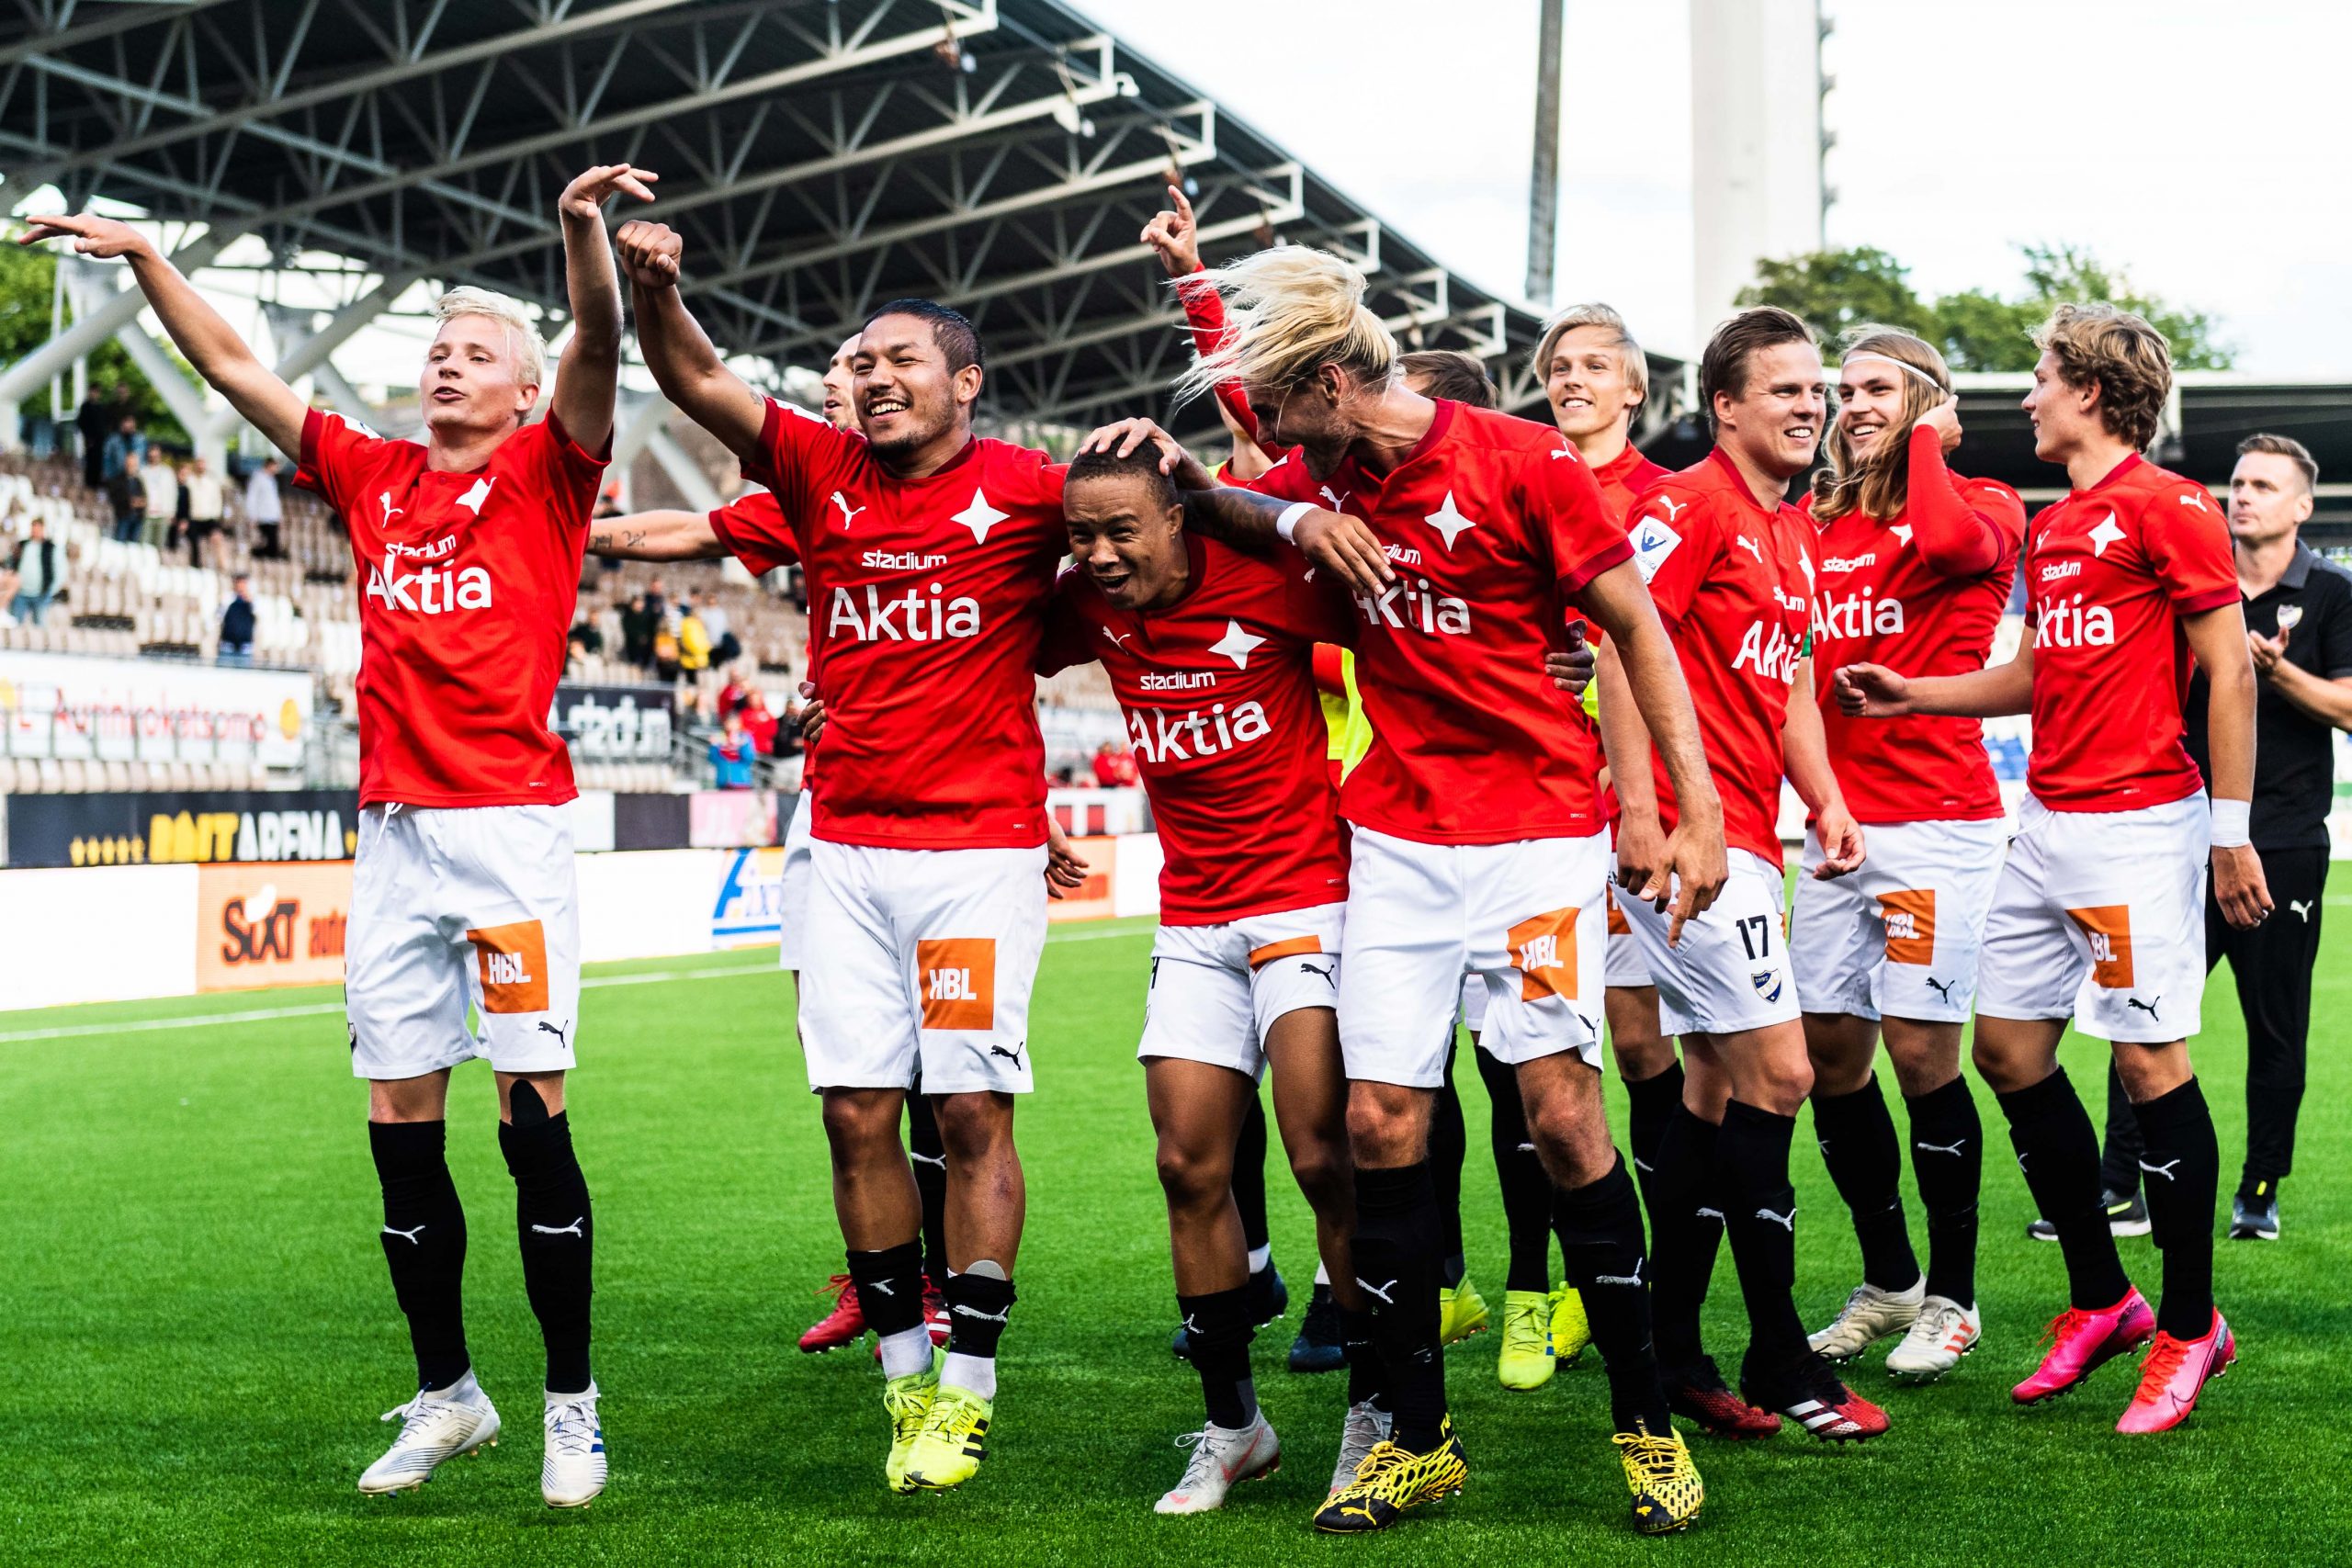 Otteluraportti: HIFK voittoon lisäajan viimeisellä minuutilla